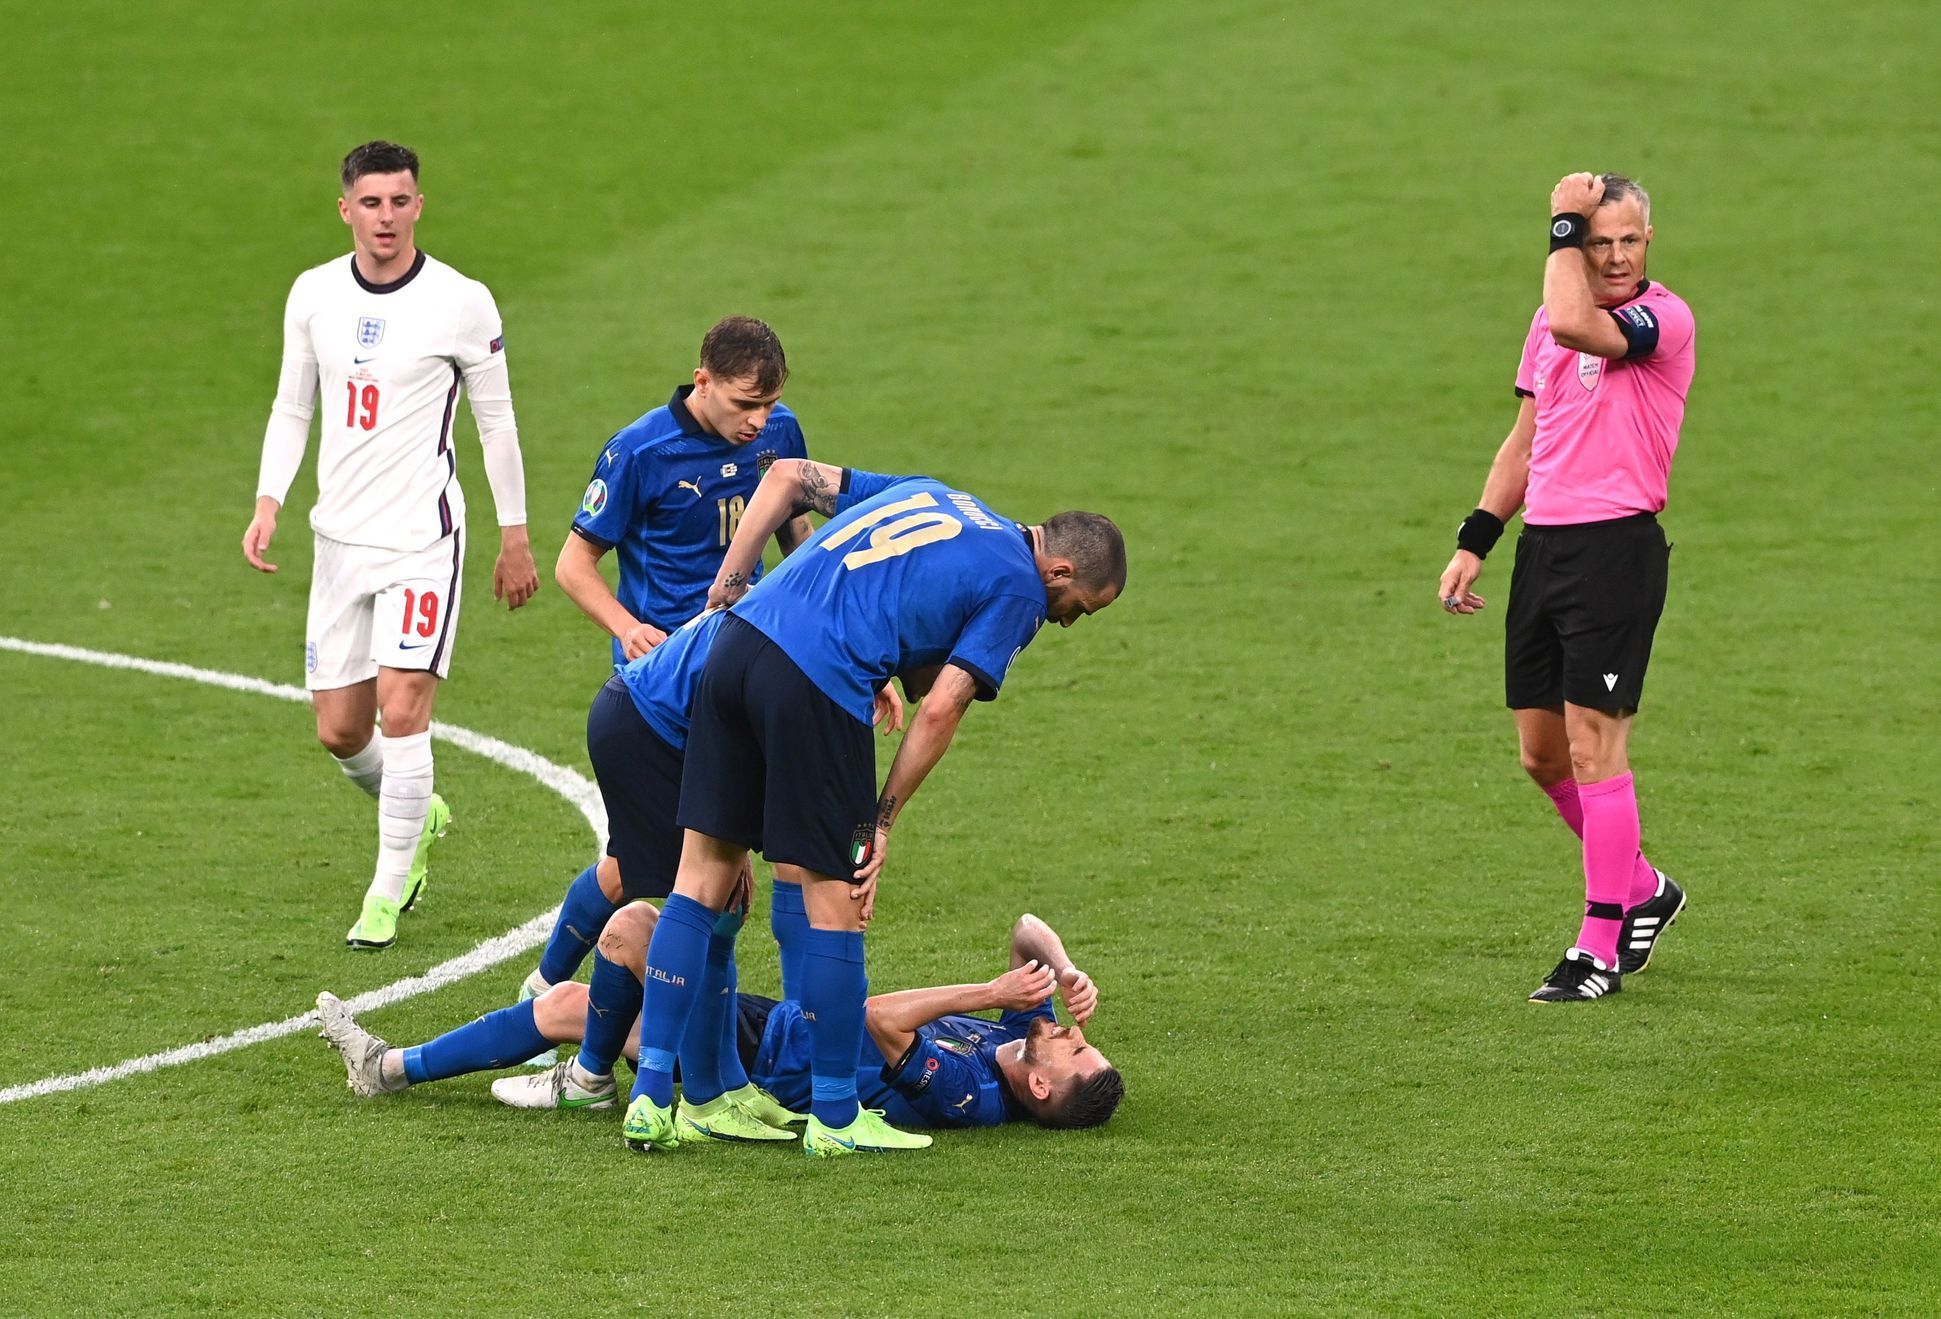 Zraněný Jorginho ve finále ME 2020 Itálie - Anglie